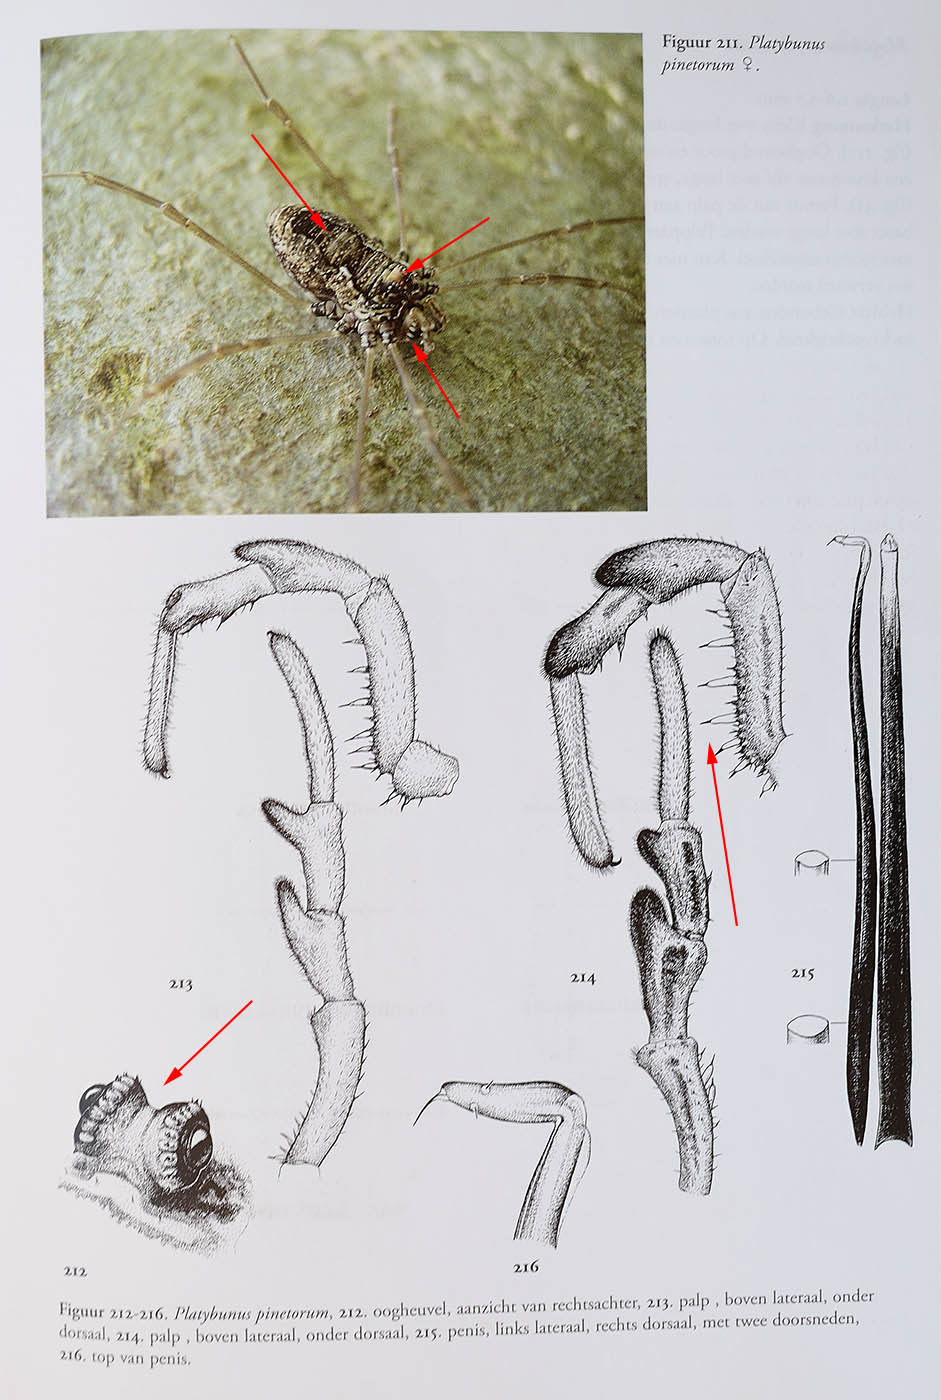 Platybunus pinetorum ♀ (Phalangiidae)